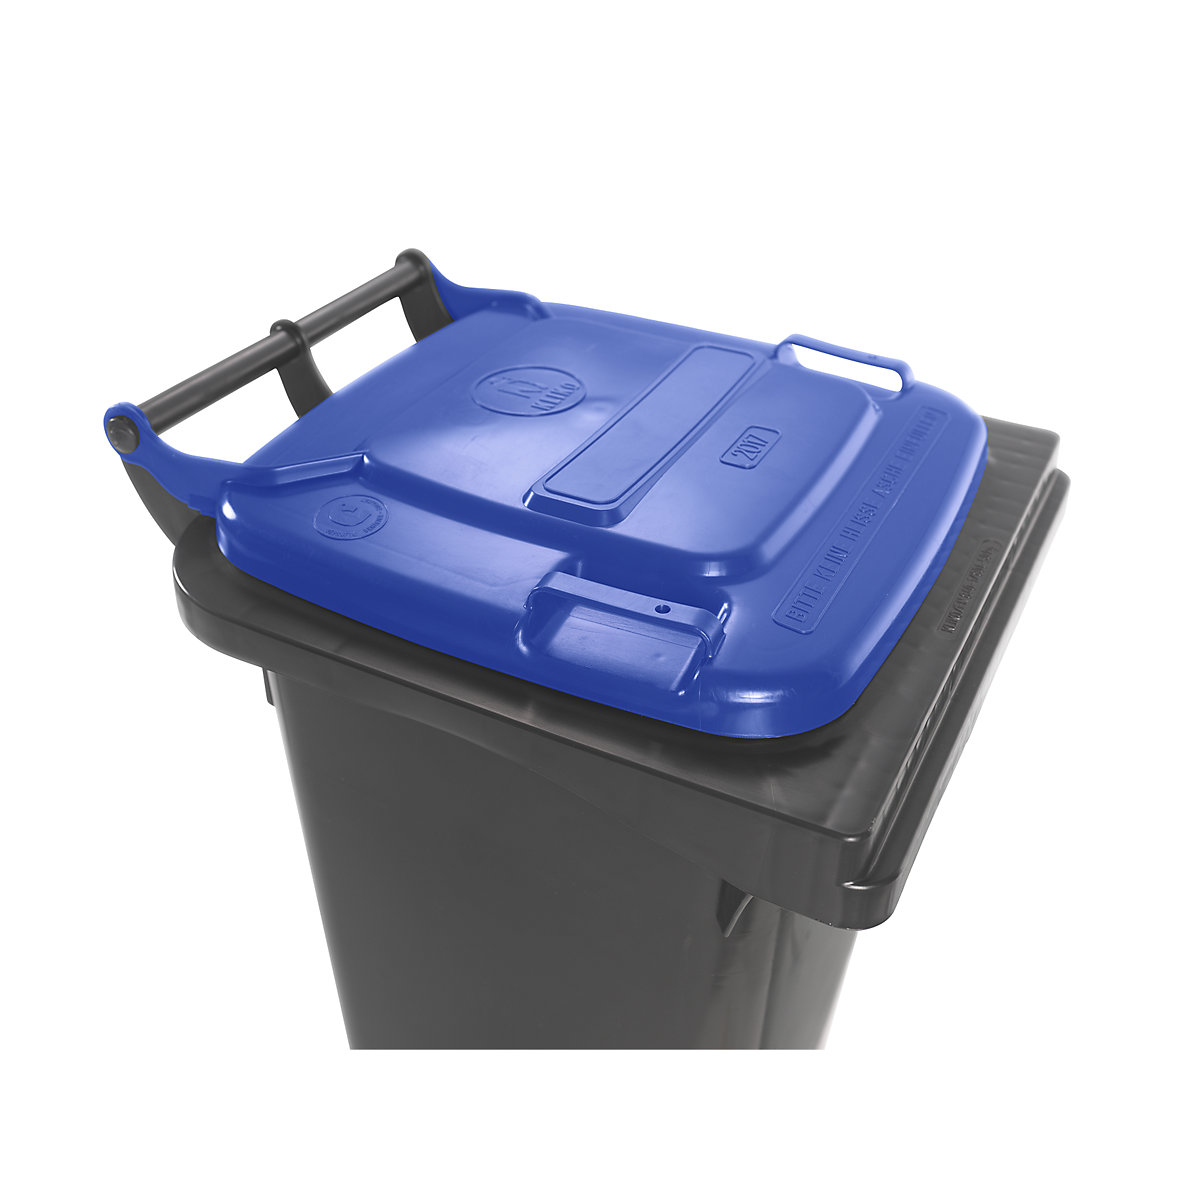 Contentor de lixo conforme a norma DIN EN 840 (Imagem do produto 8)